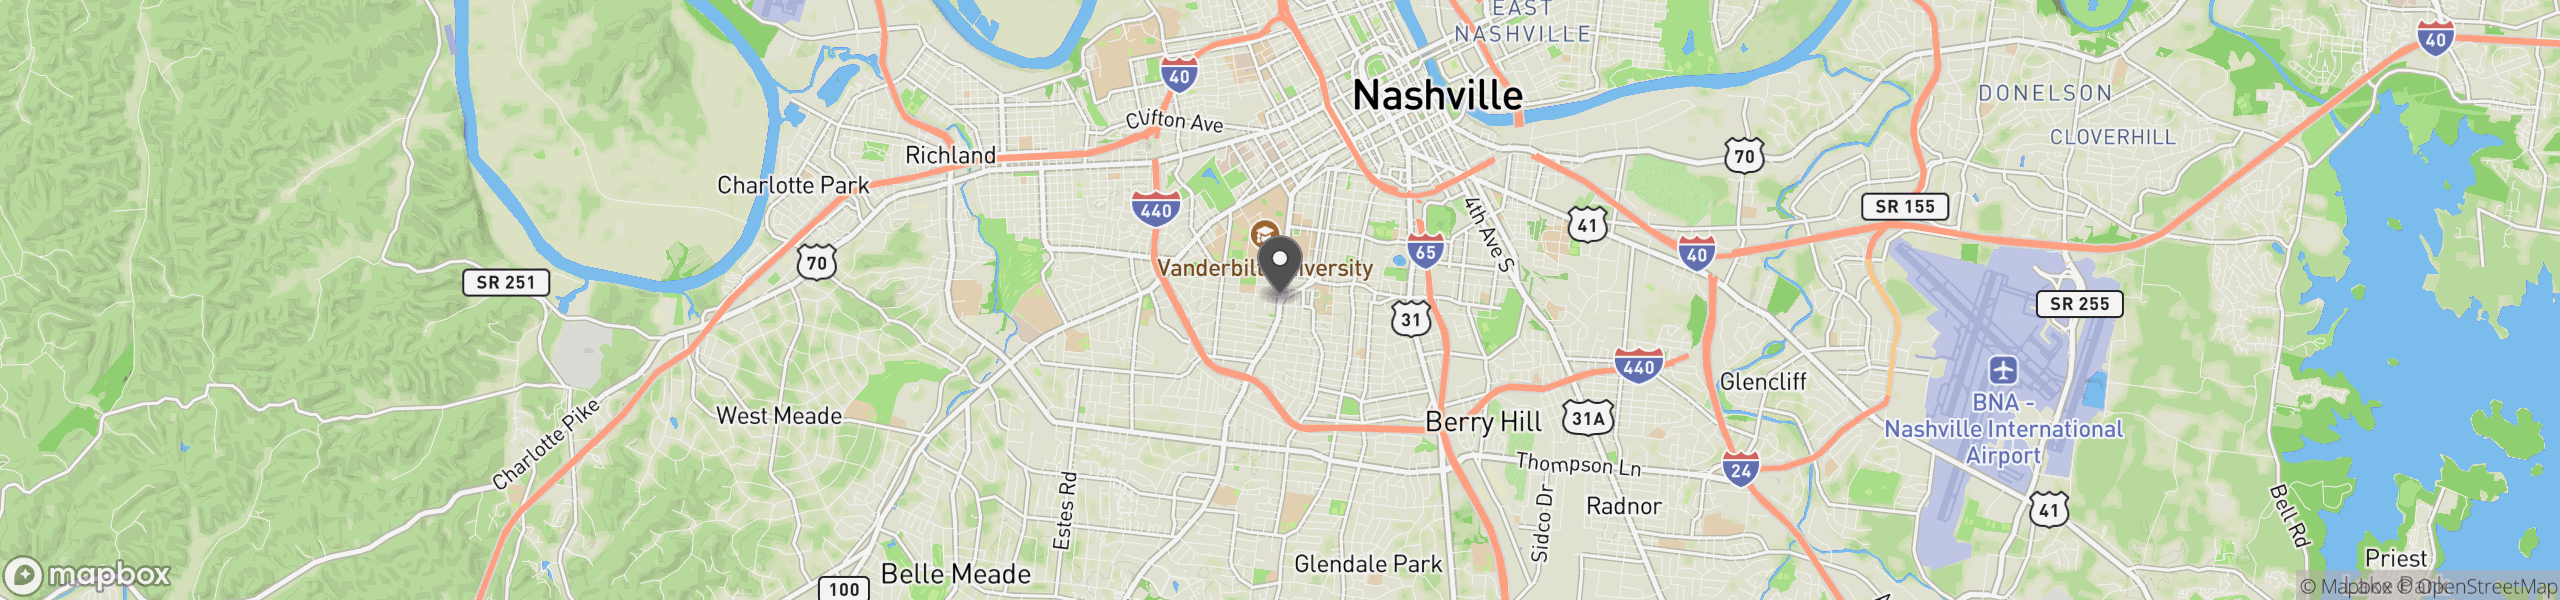 Nashville, TN 37212